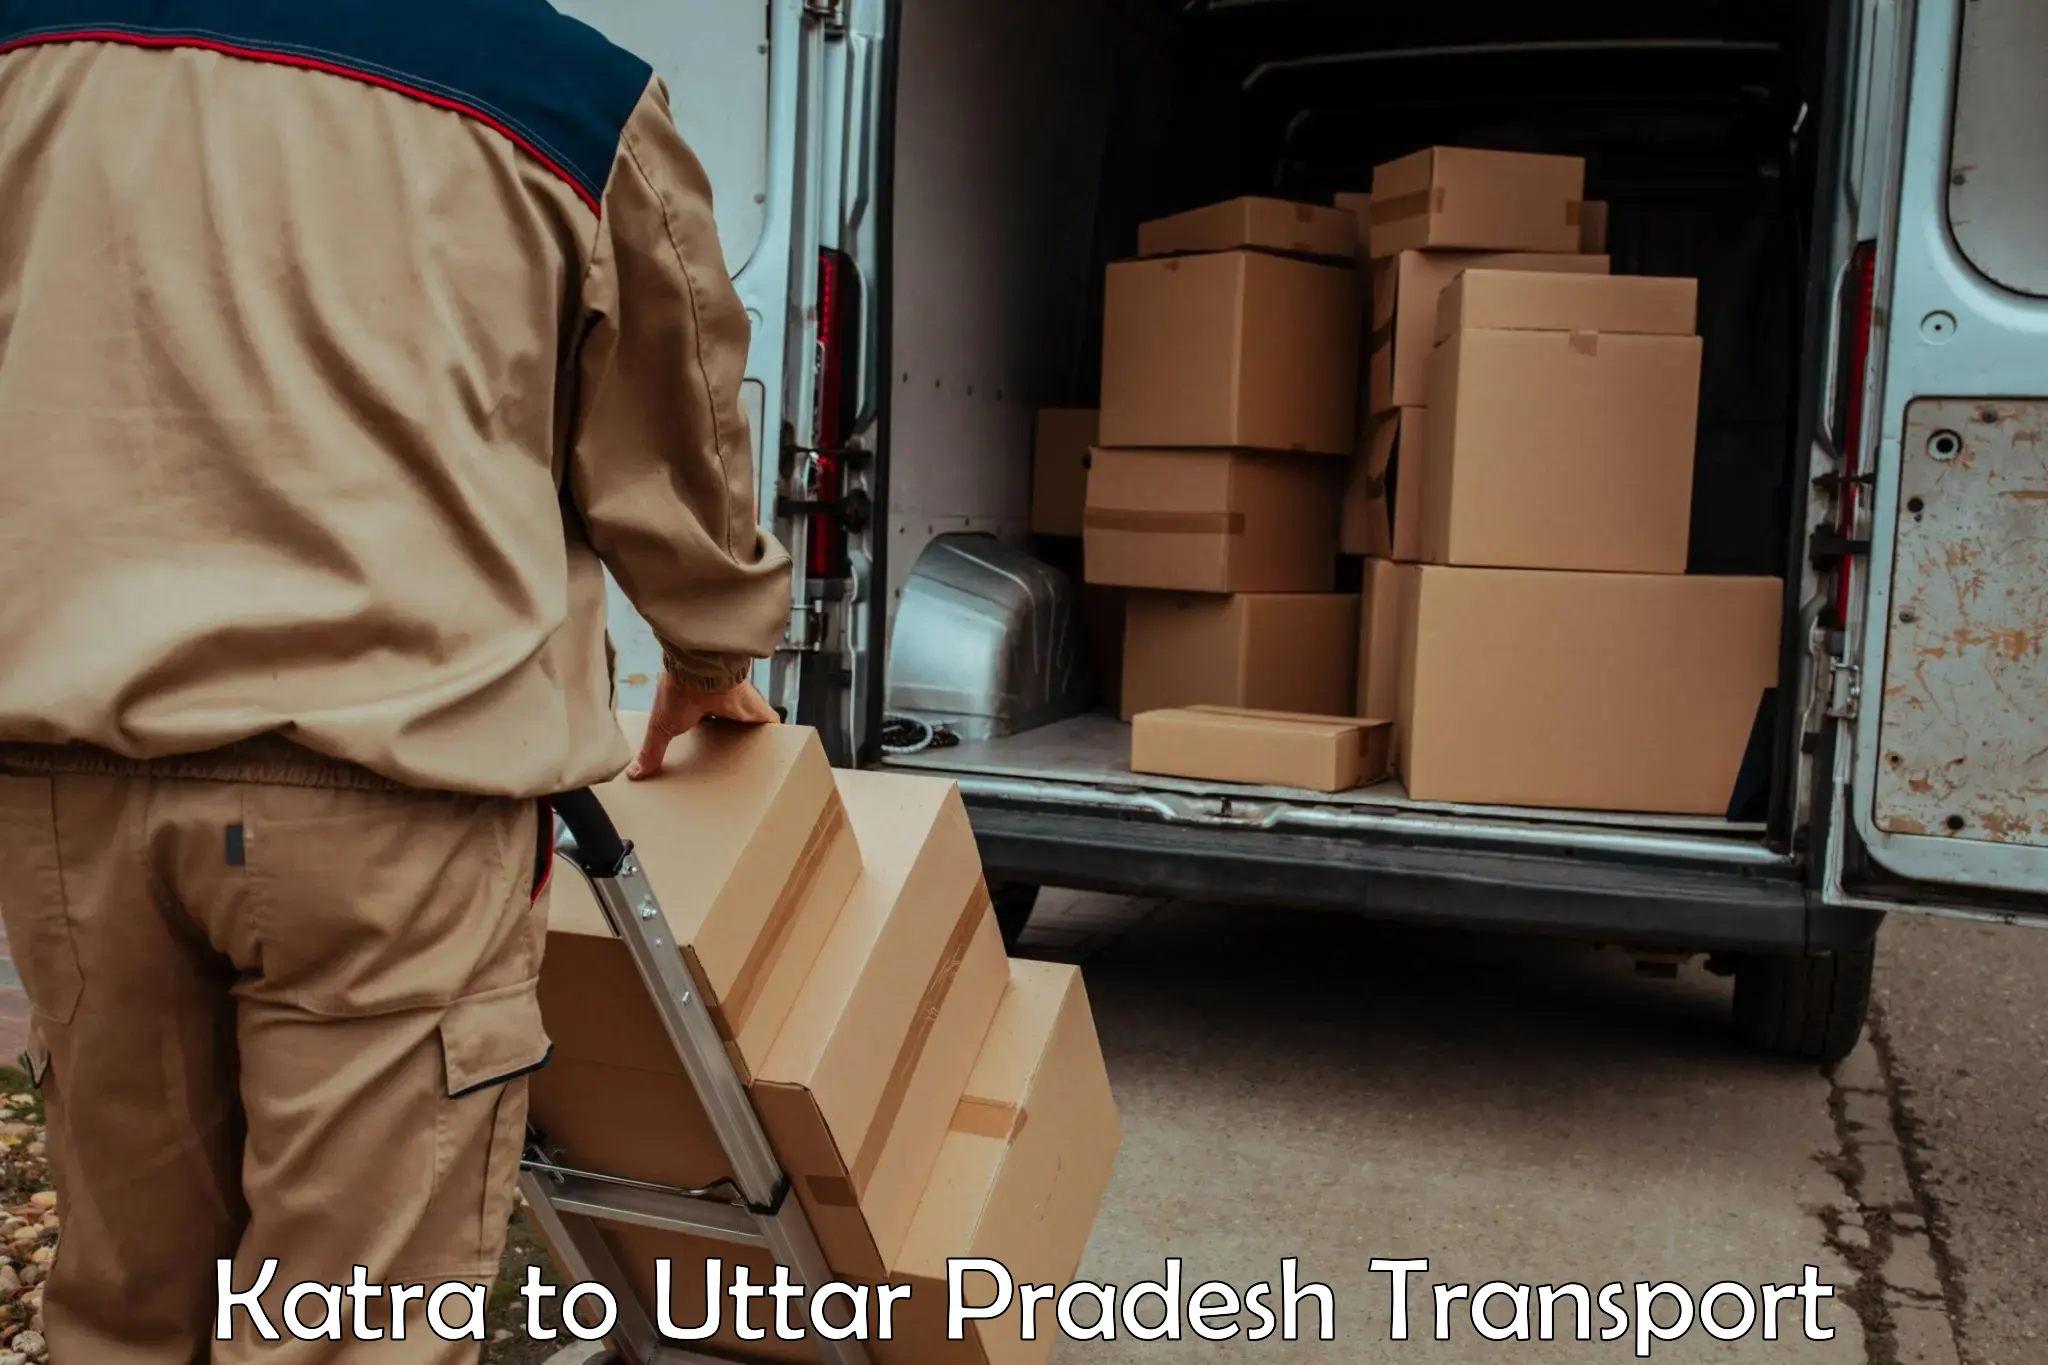 Transport in sharing in Katra to Uttar Pradesh